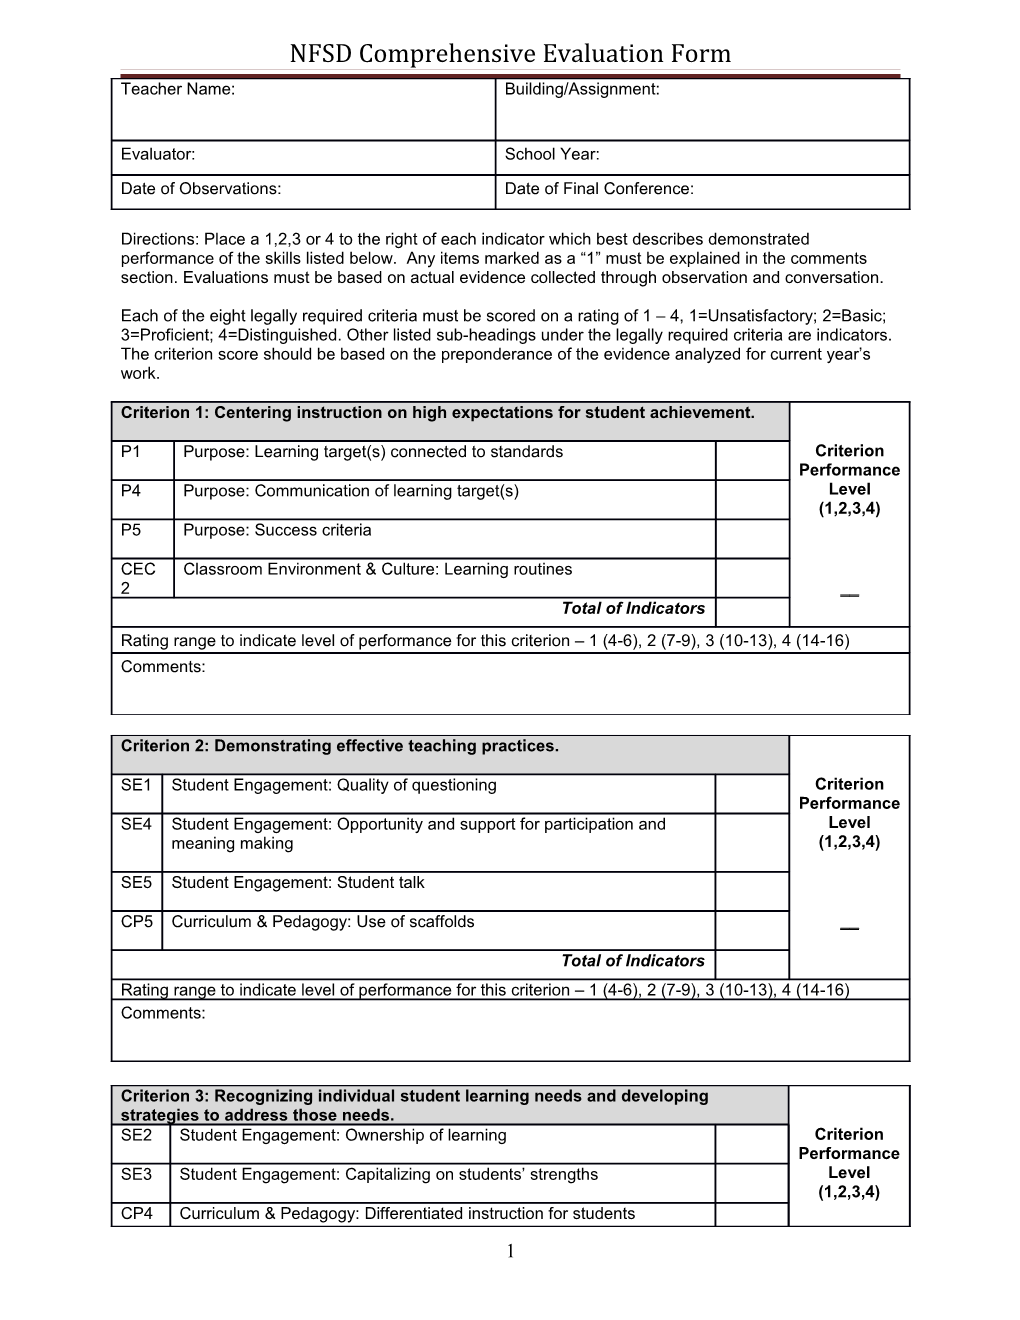 NFSD Comprehensive Evaluation Form